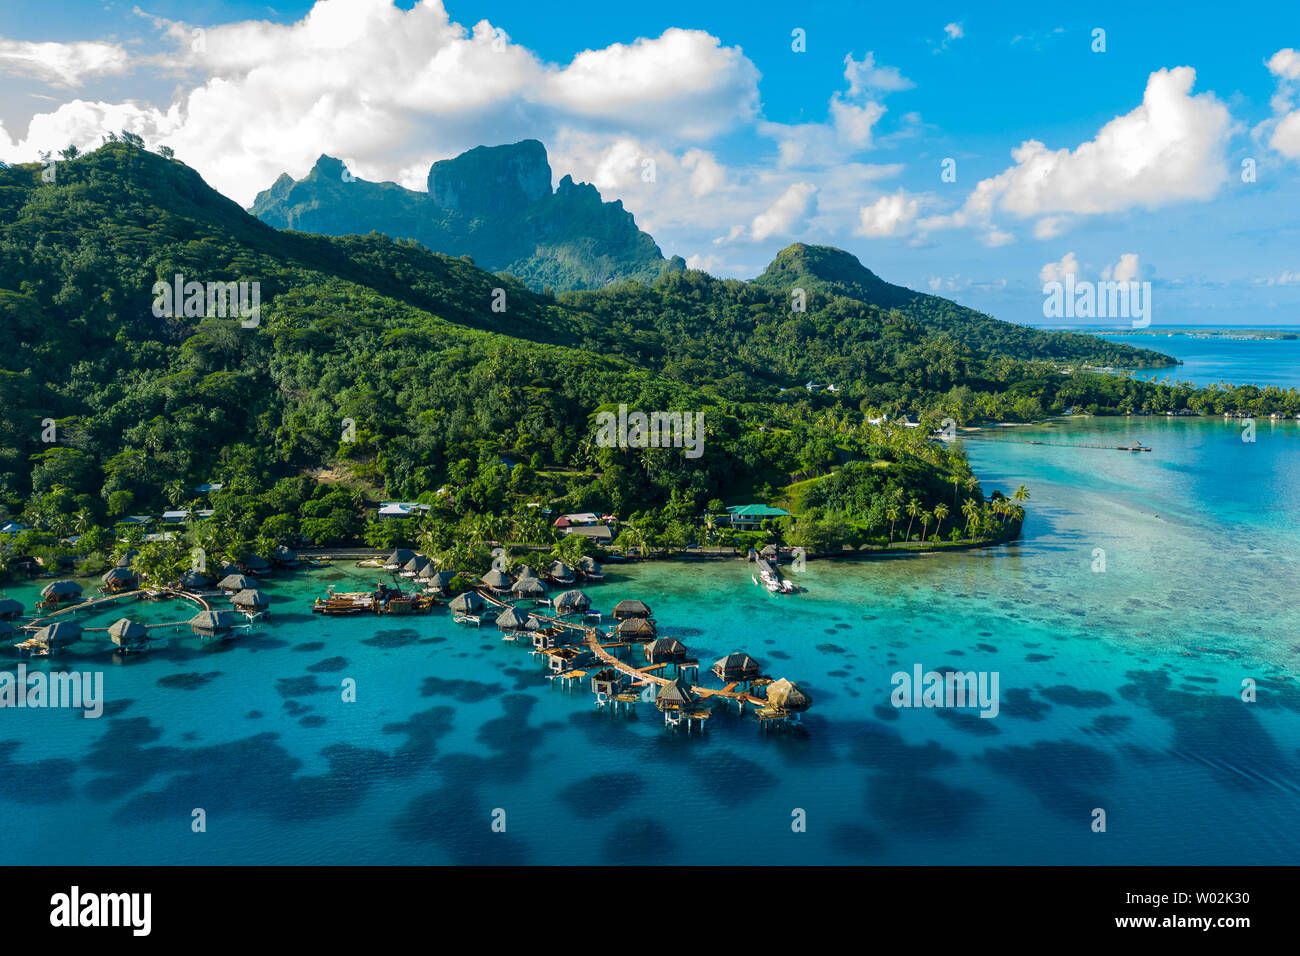 Bora Bora vidéo drone aérien de voyage vacances paradise bungalows sur pilotis avec luxury resort, coral reef lagoon ocean beach. Le Mont Otemanu, Bora Bora, Polynésie Française, Tahiti, l'océan Pacifique Sud Banque D'Images